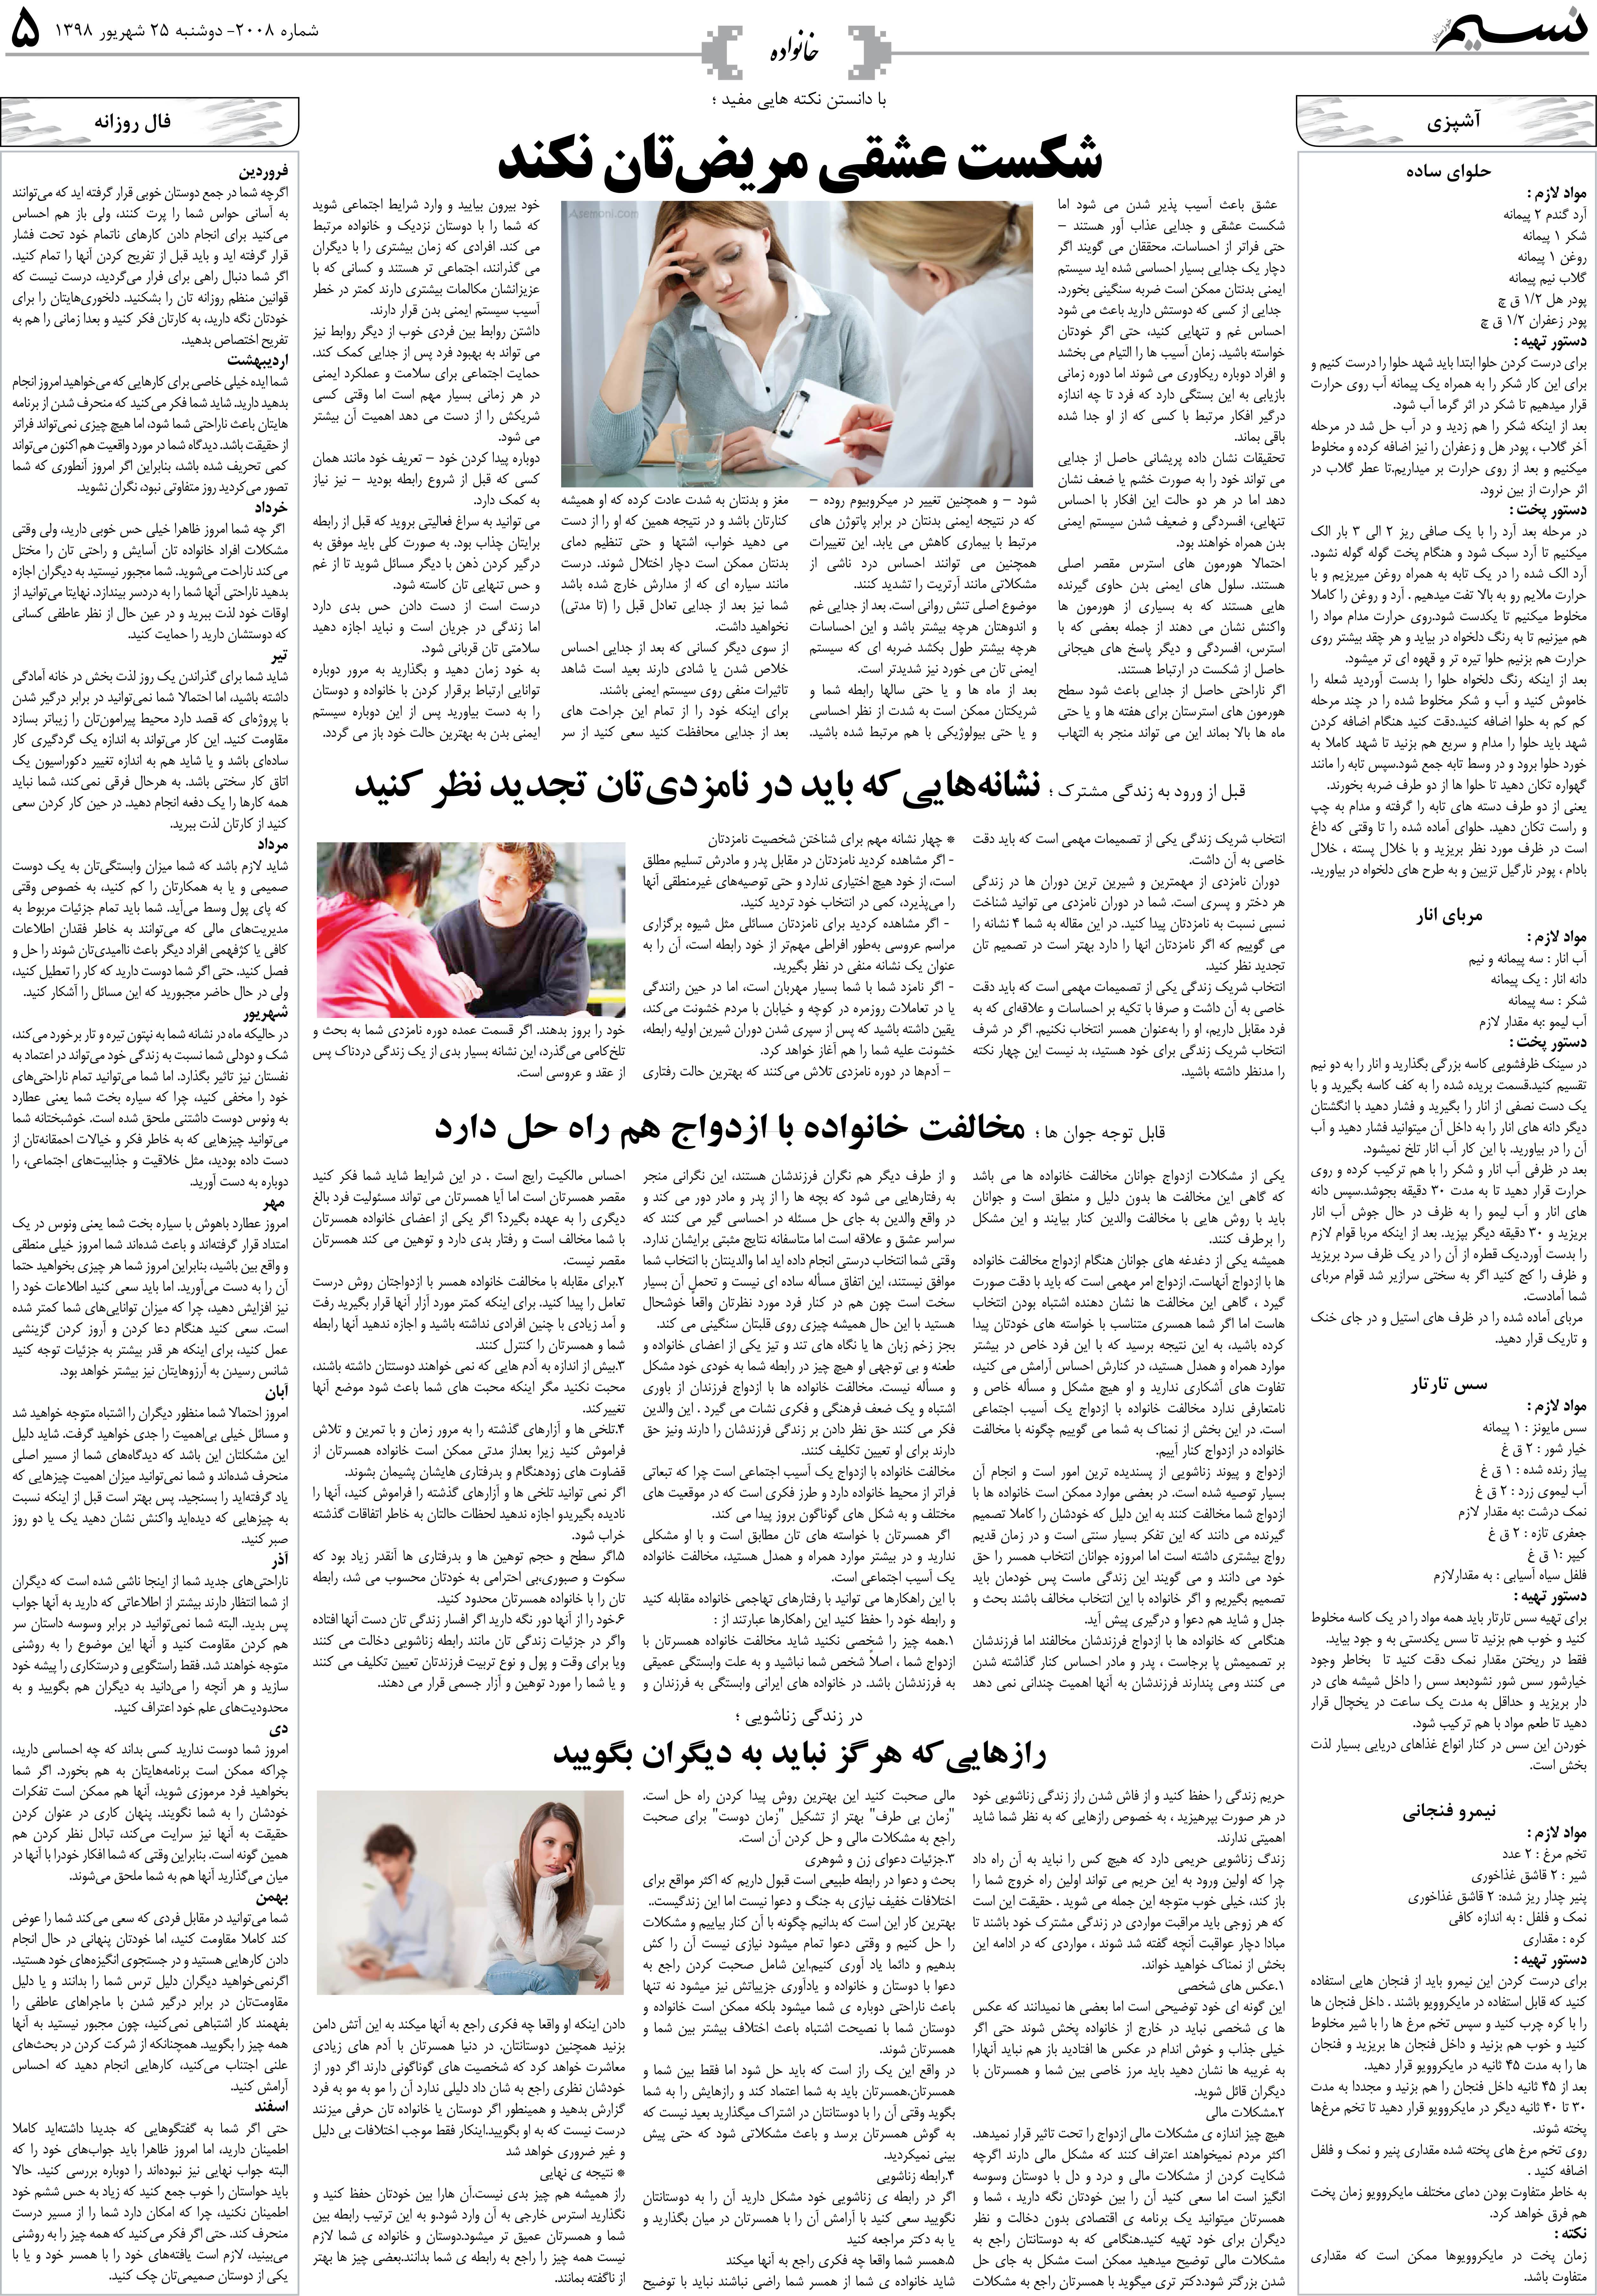 صفحه خانواده روزنامه نسیم شماره 2008